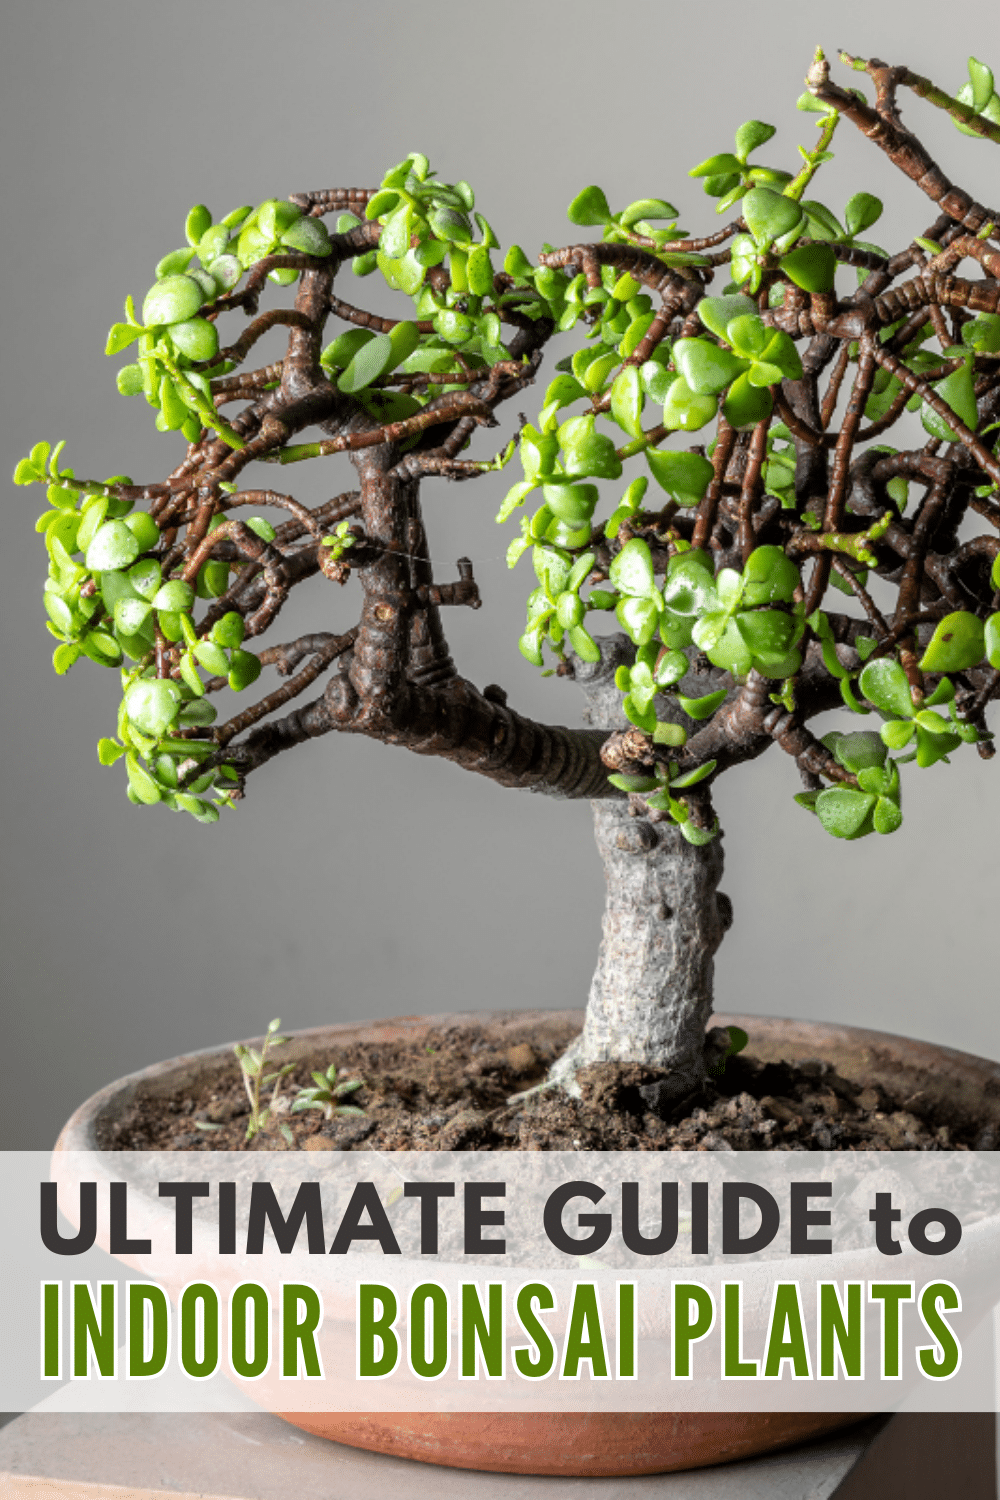 The definitive handbook for nurturing indoor bonsai plants.